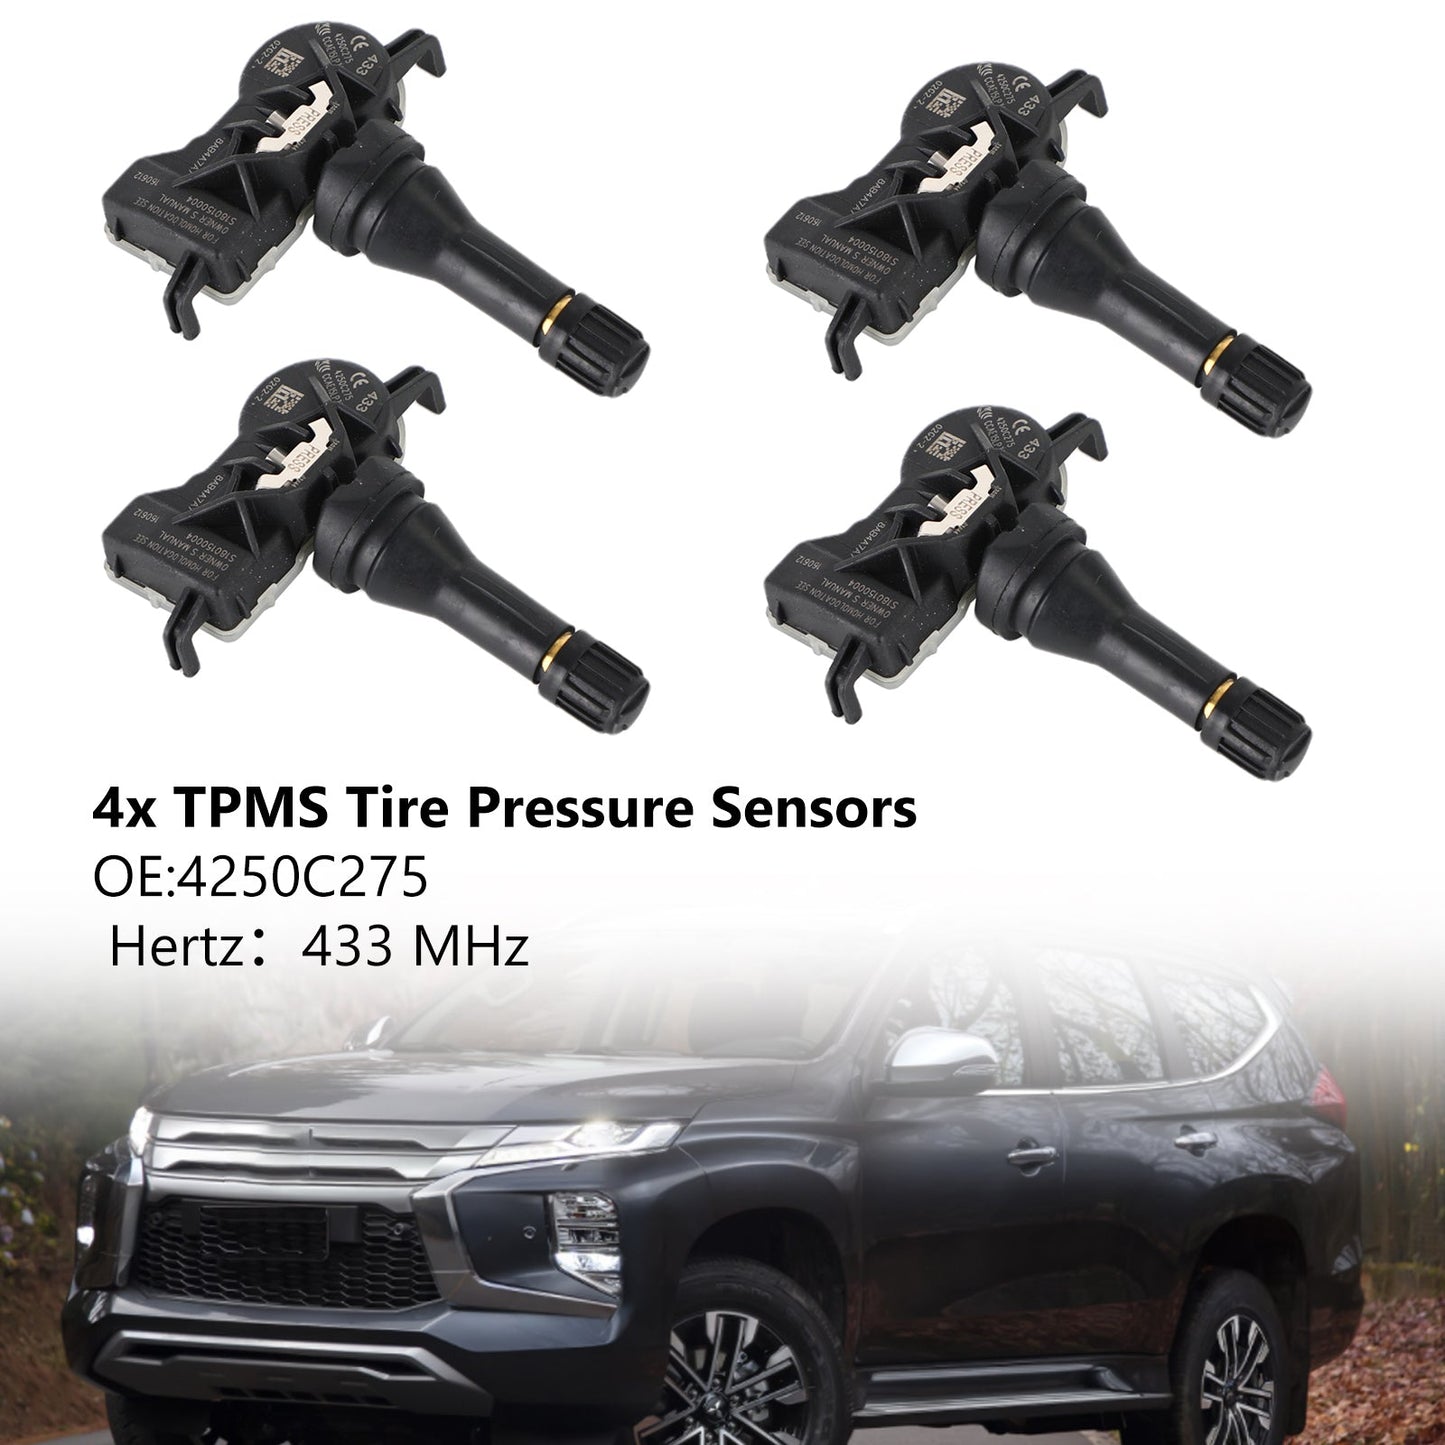 4x TPMS Tire Pressure Sensor 4250C275 For Mitsubishi Attrage Mirage Pajero